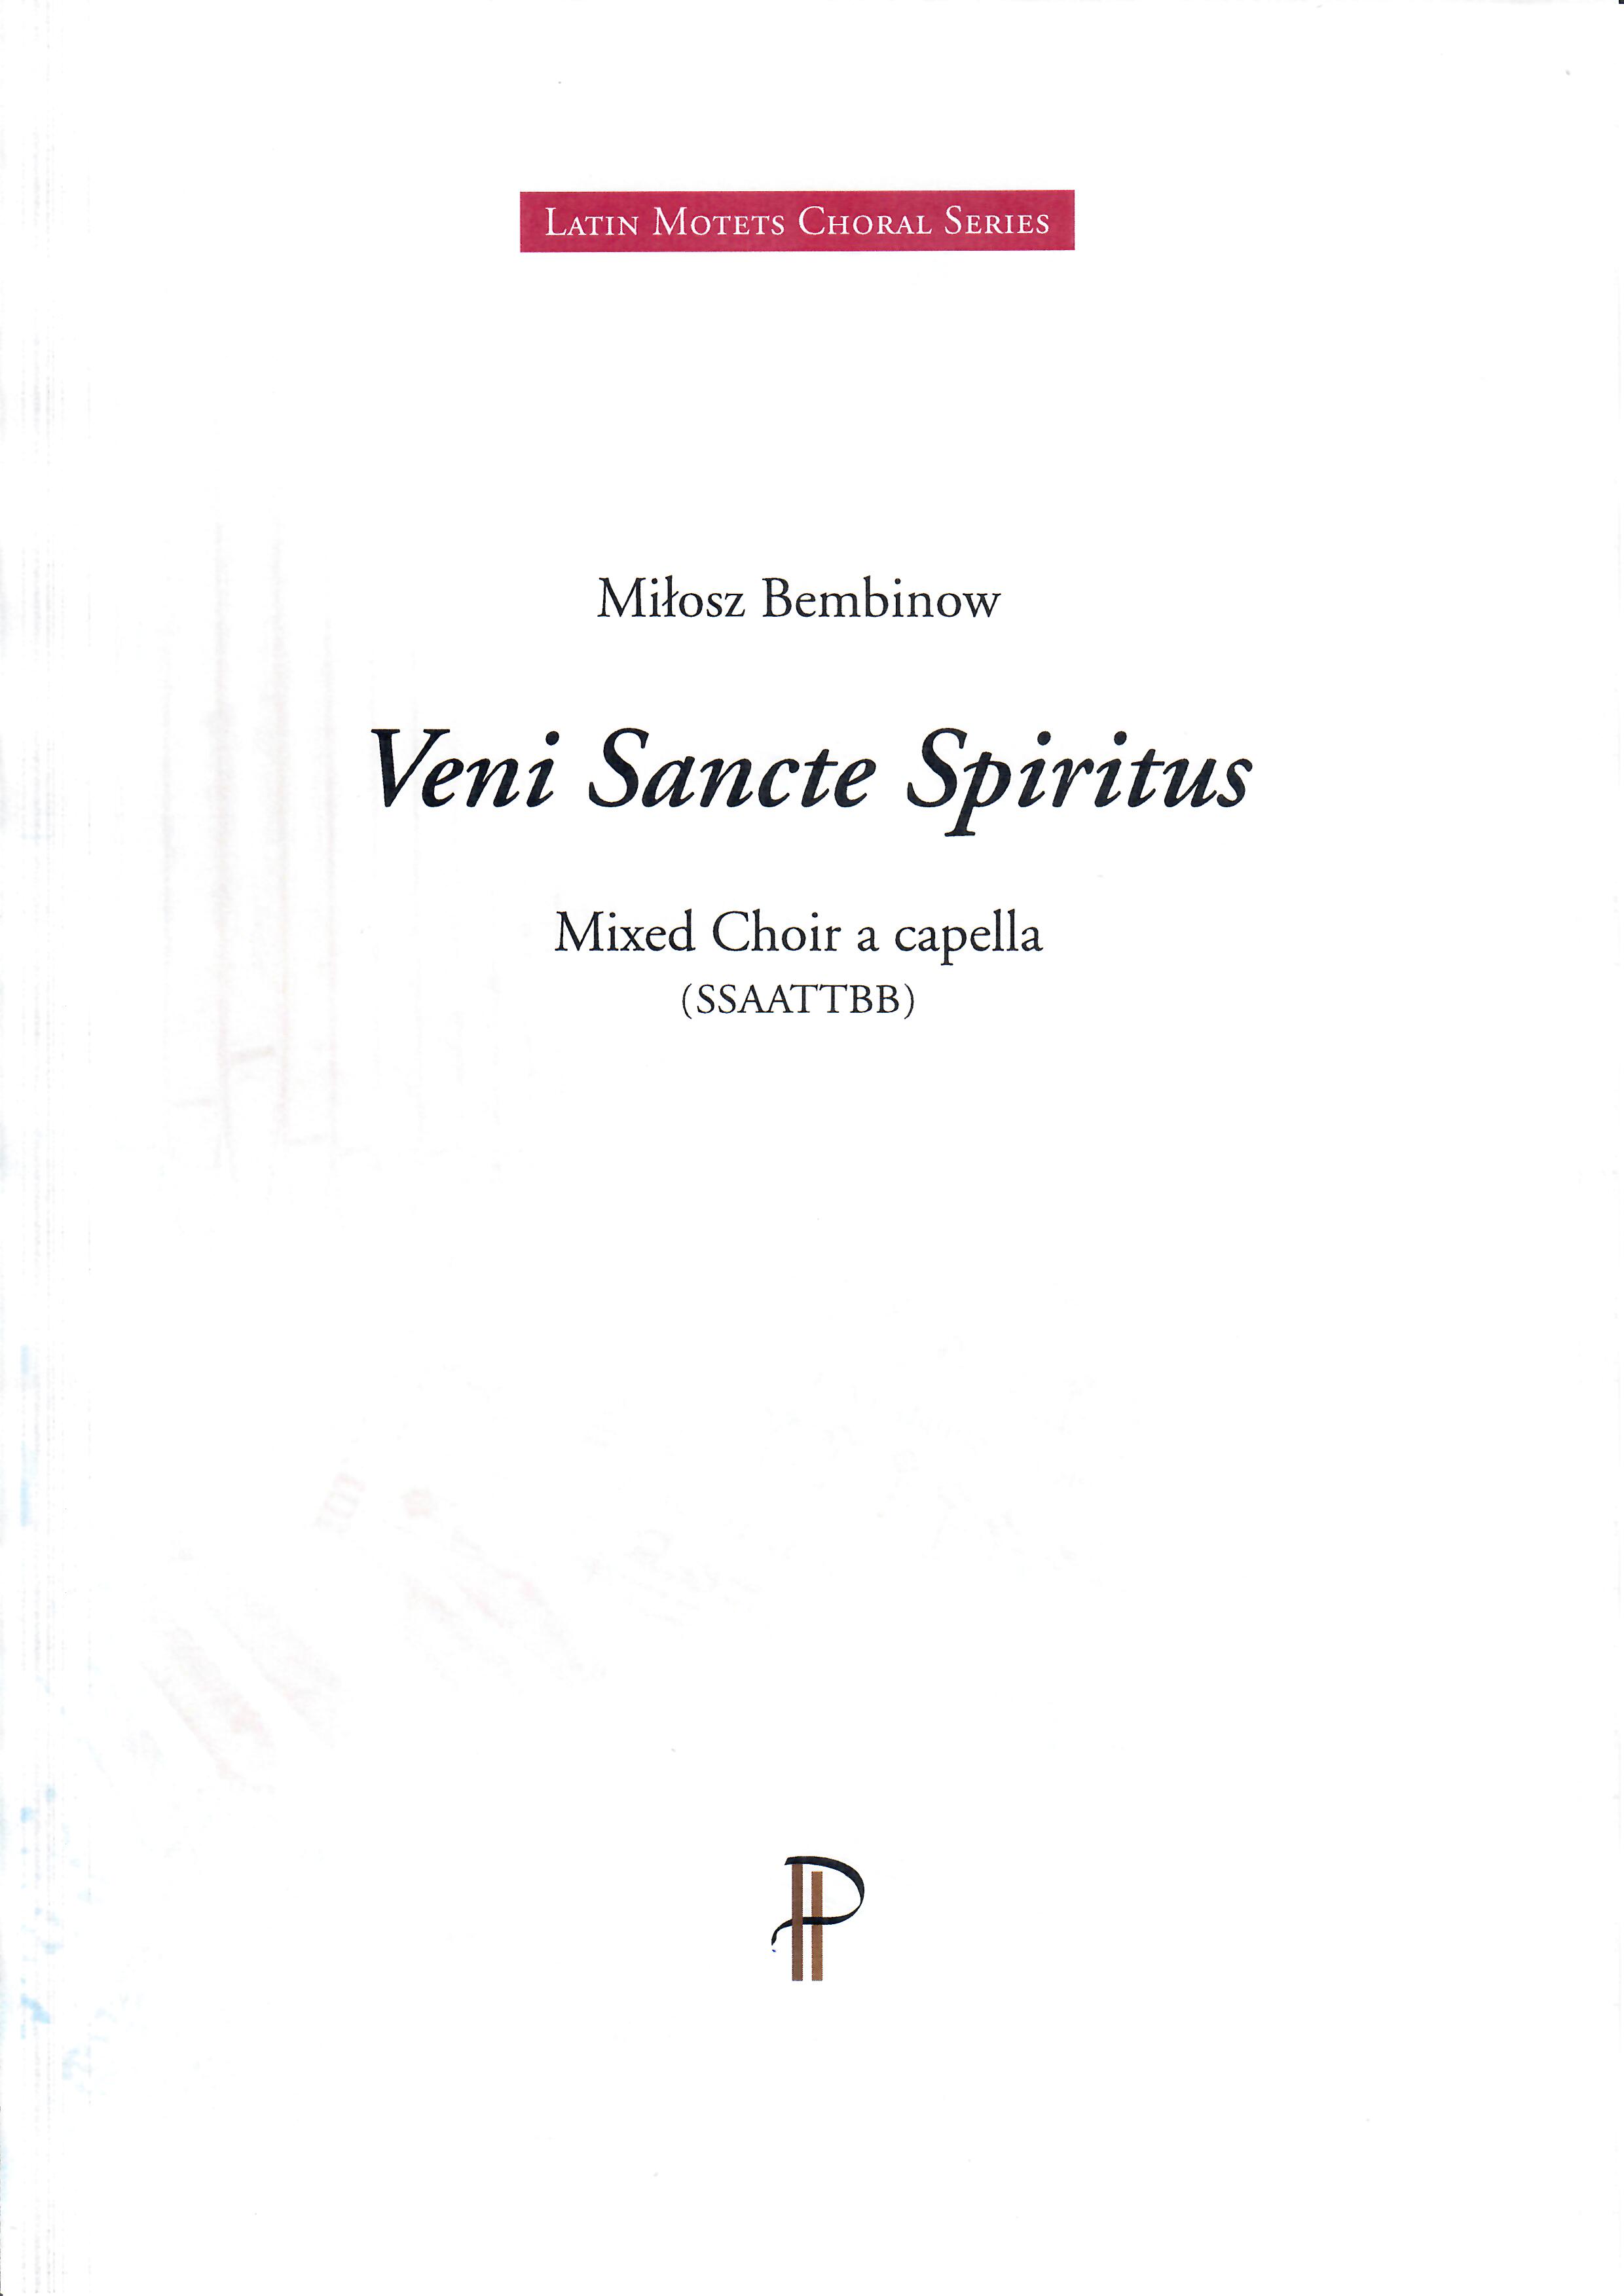 Veni-Sancte-Spiritus - Show sample score